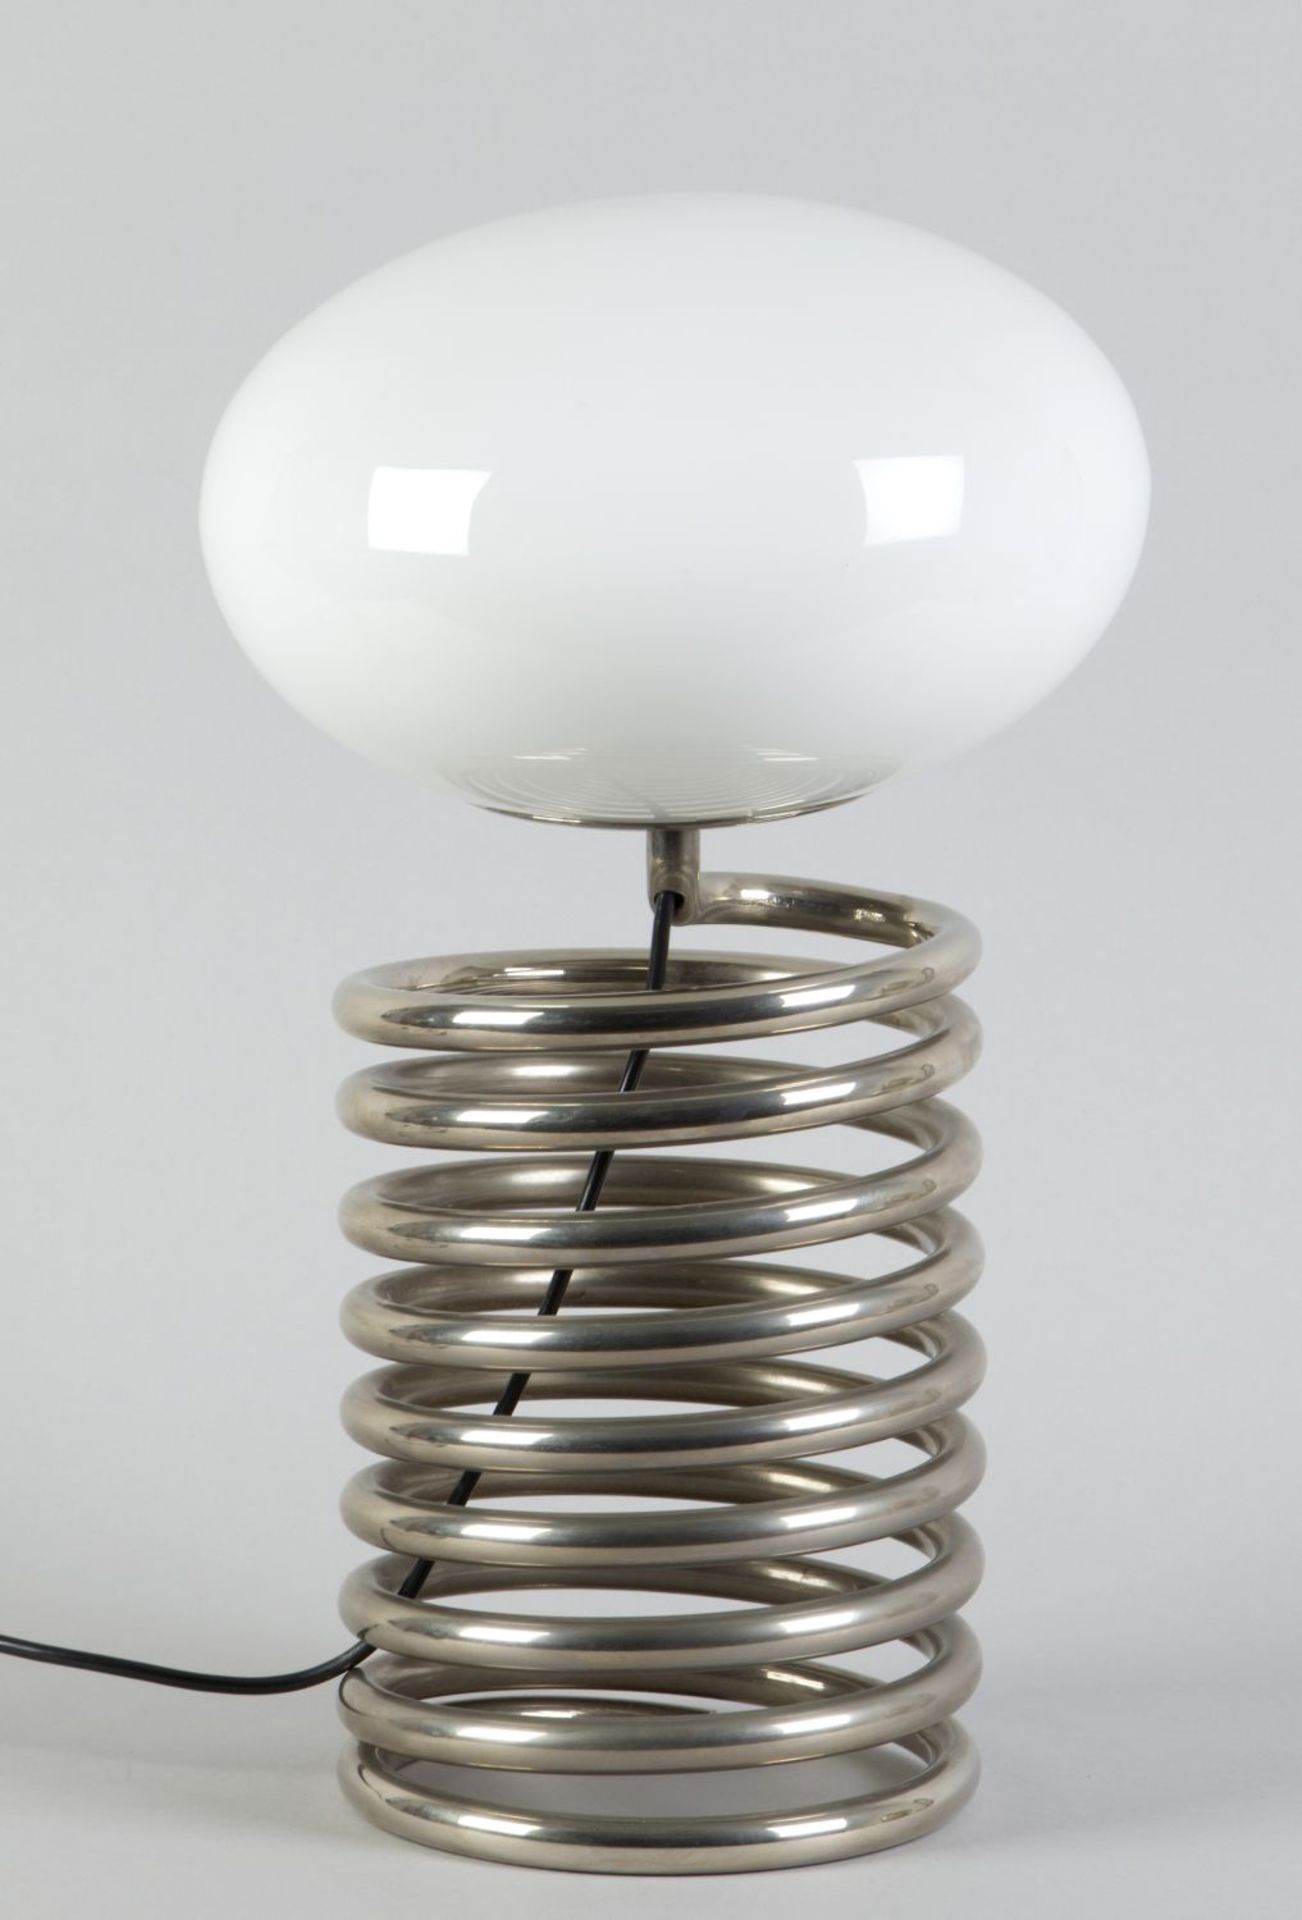 Tischlampe Verchromt Stahlspirale. Opalglasschirm. 1-flammig. Entwurf Ingo Maurer, 1970er-Jahre. Her